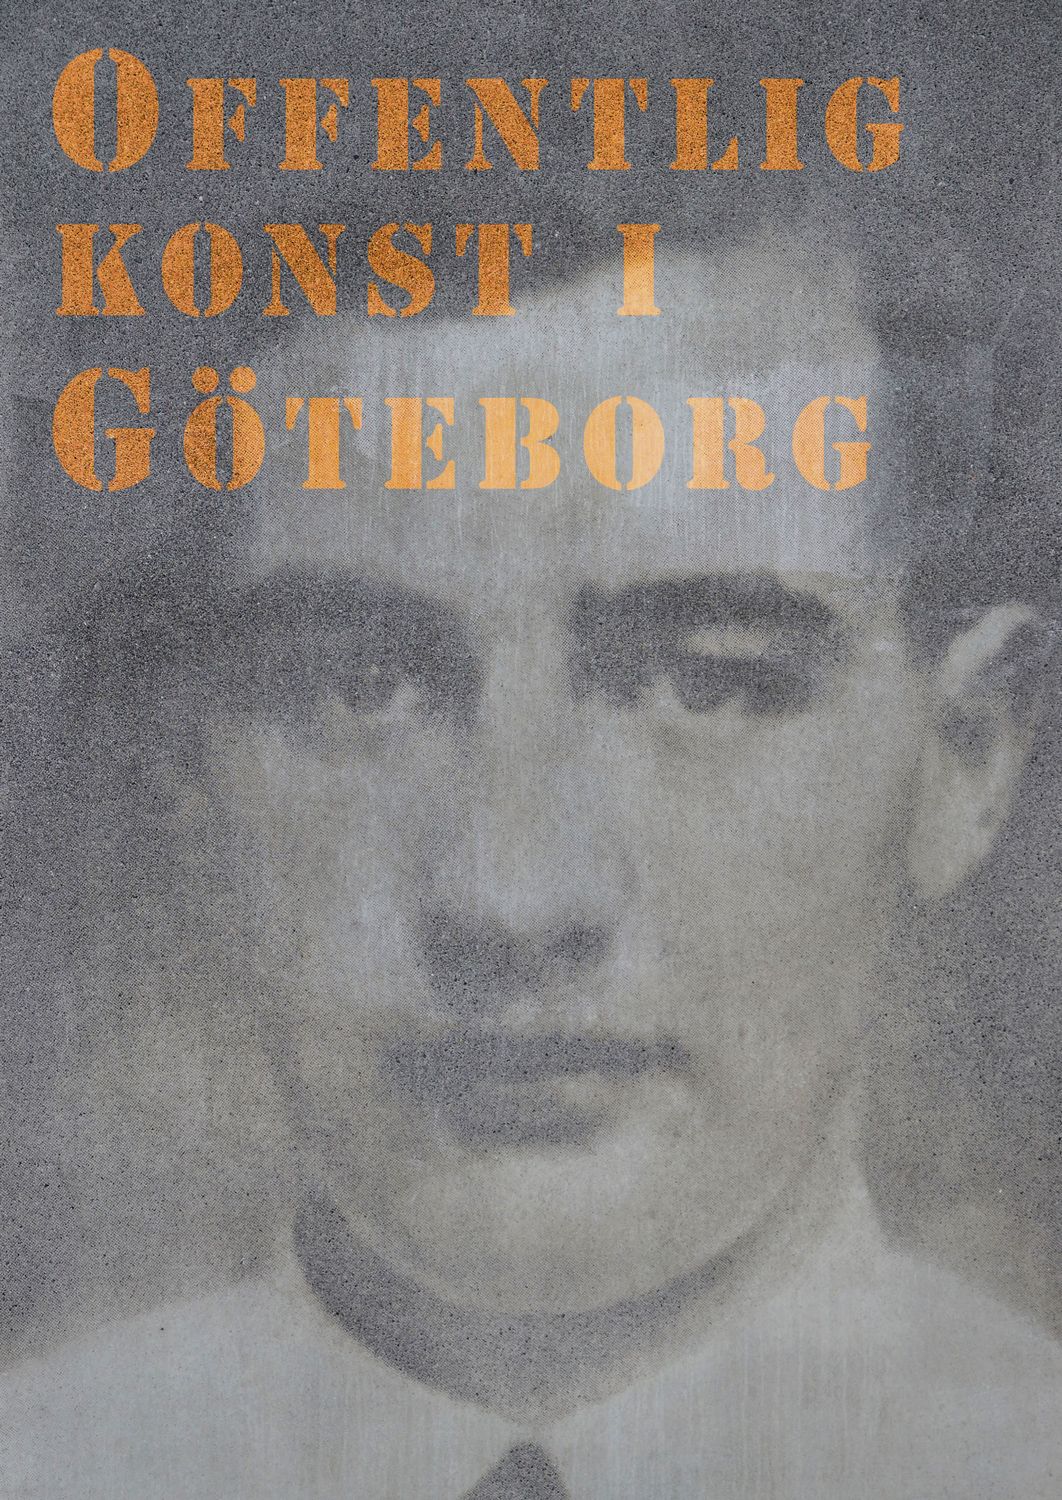 Offentlig konst i Göteborg, e-bok av Mikael Mosesson